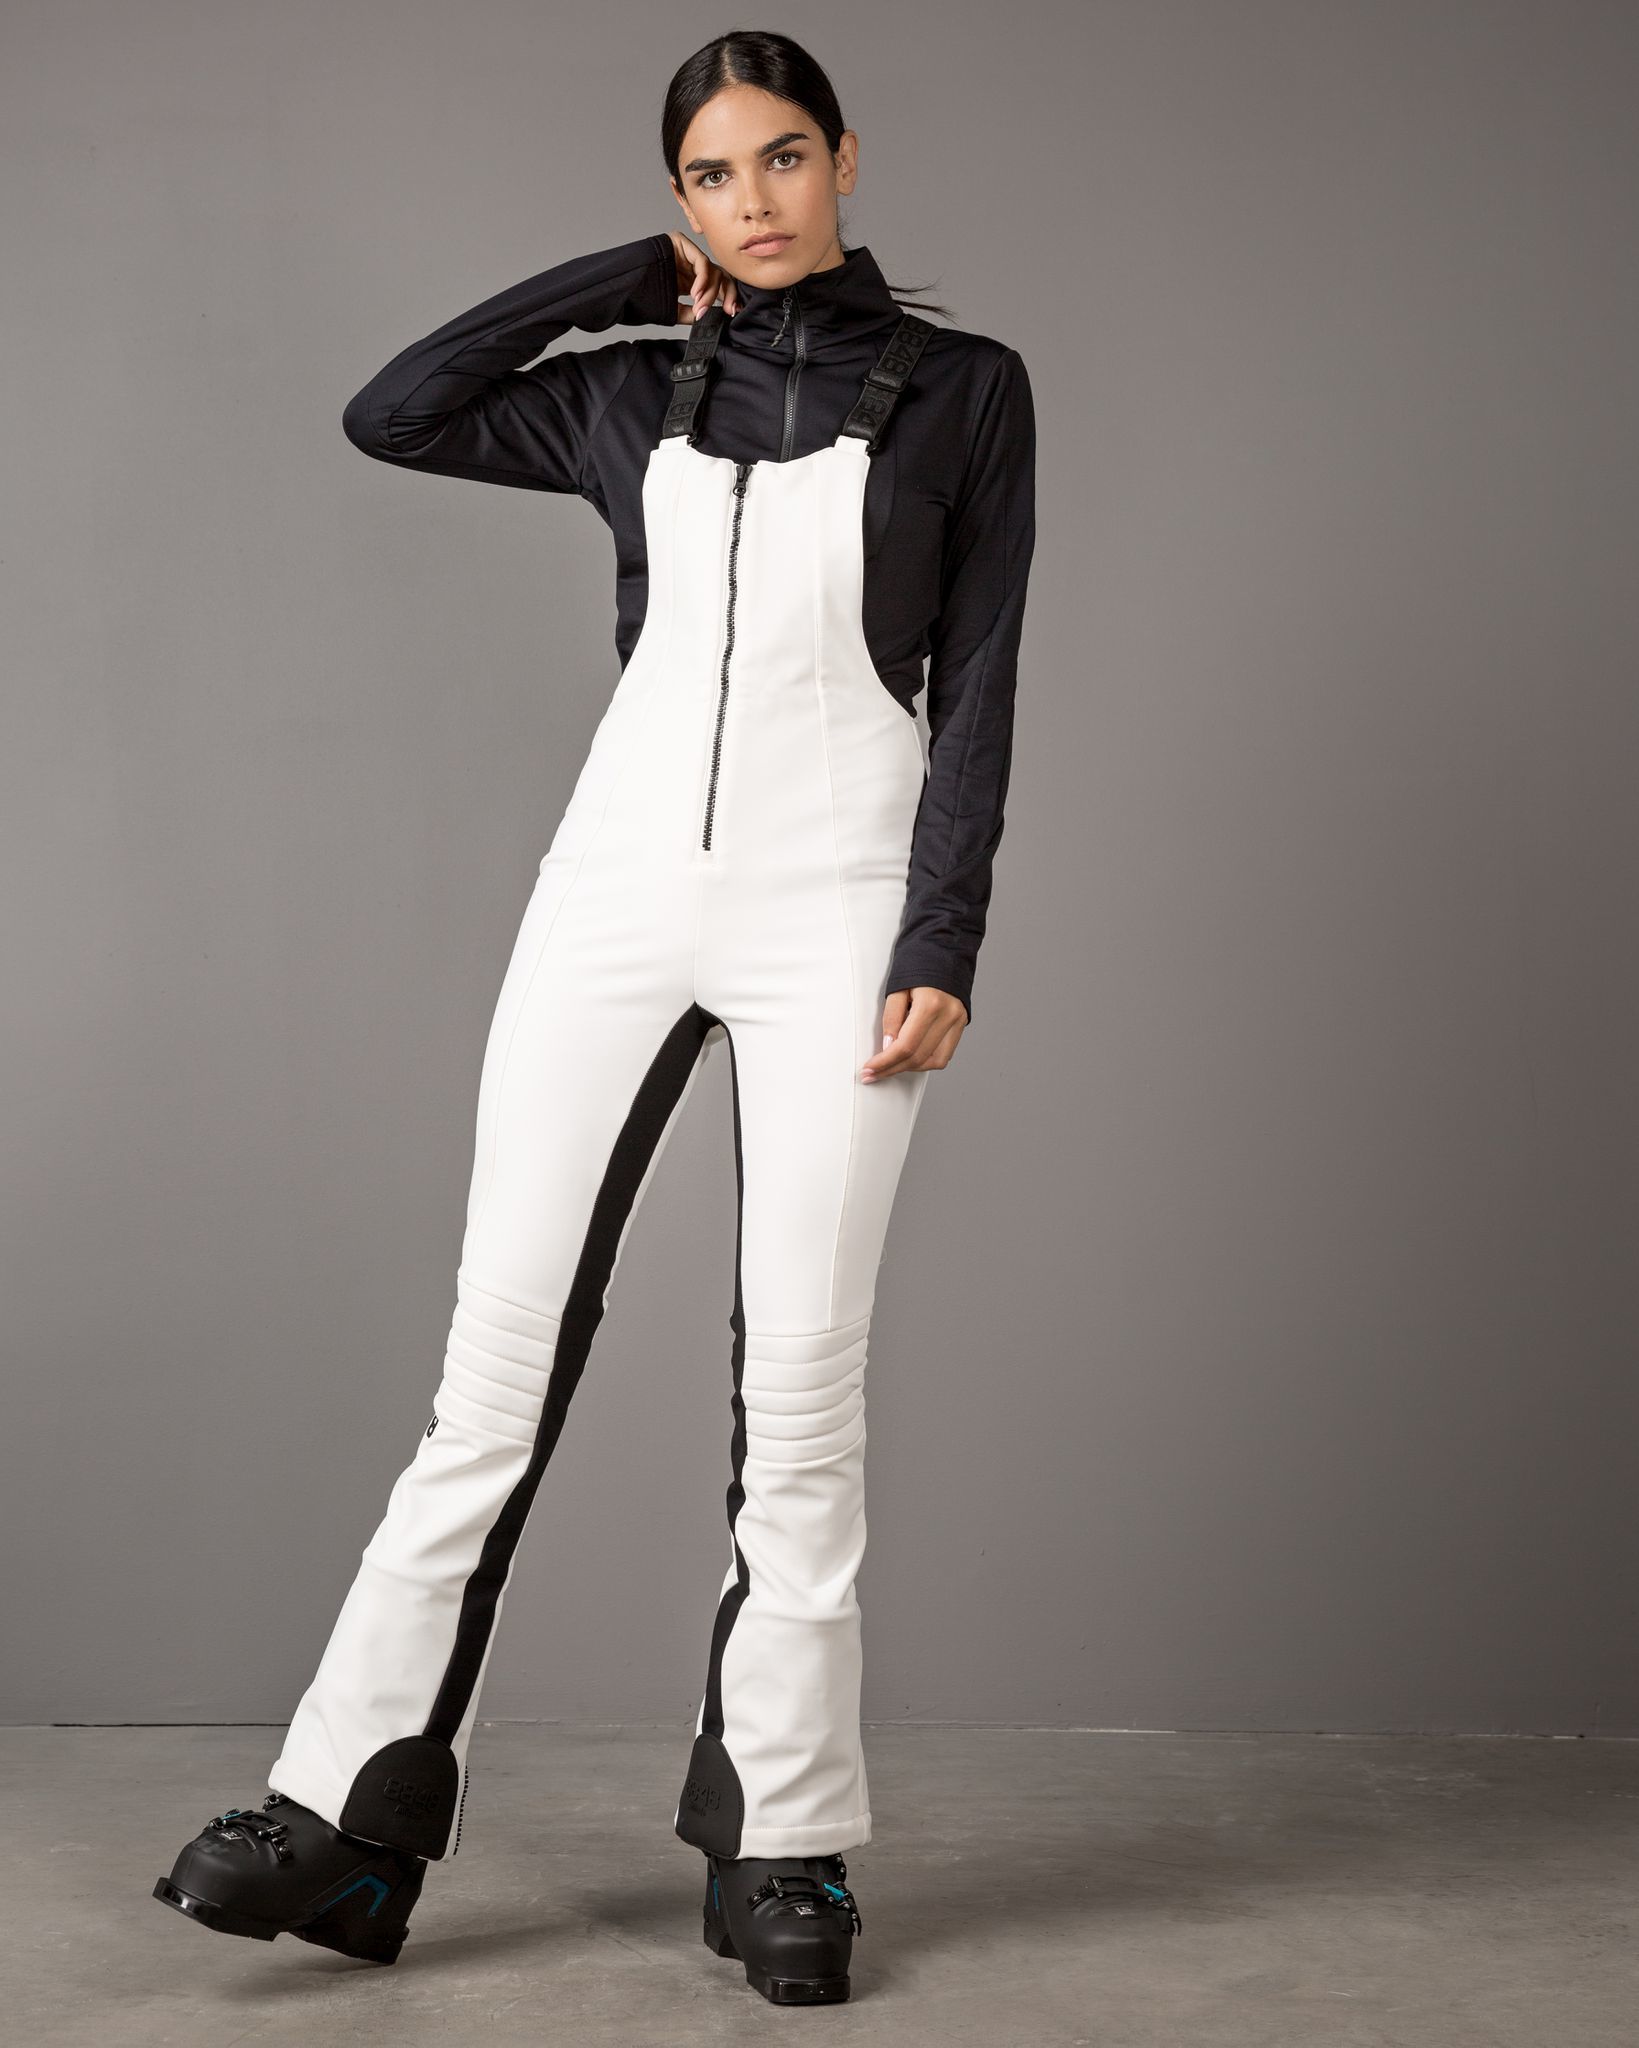 Женские горнолыжные брюки 8848 Altitude Cruella 221702 купить вИнтернет-магазине Five-sport.ru